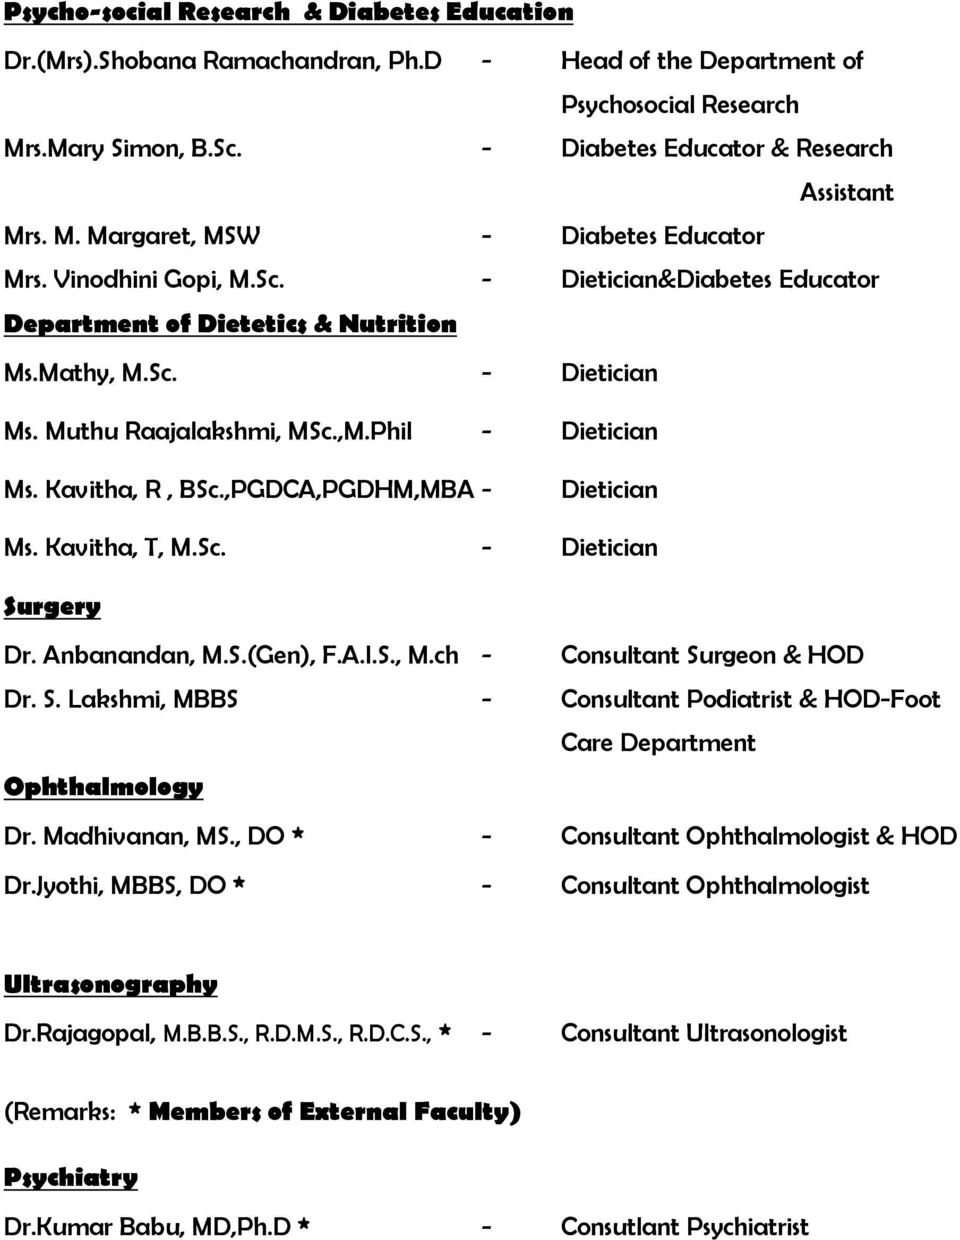 ,PGDCA,PGDHM,MBA - Dietician Ms. Kavitha, T, M.Sc. - Dietician Surgery Dr. Anbanandan, M.S.(Gen), F.A.I.S., M.ch - Consultant Surgeon & HOD Dr. S. Lakshmi, MBBS - Consultant Podiatrist & HOD-Foot Care Department Ophthalmology Dr.